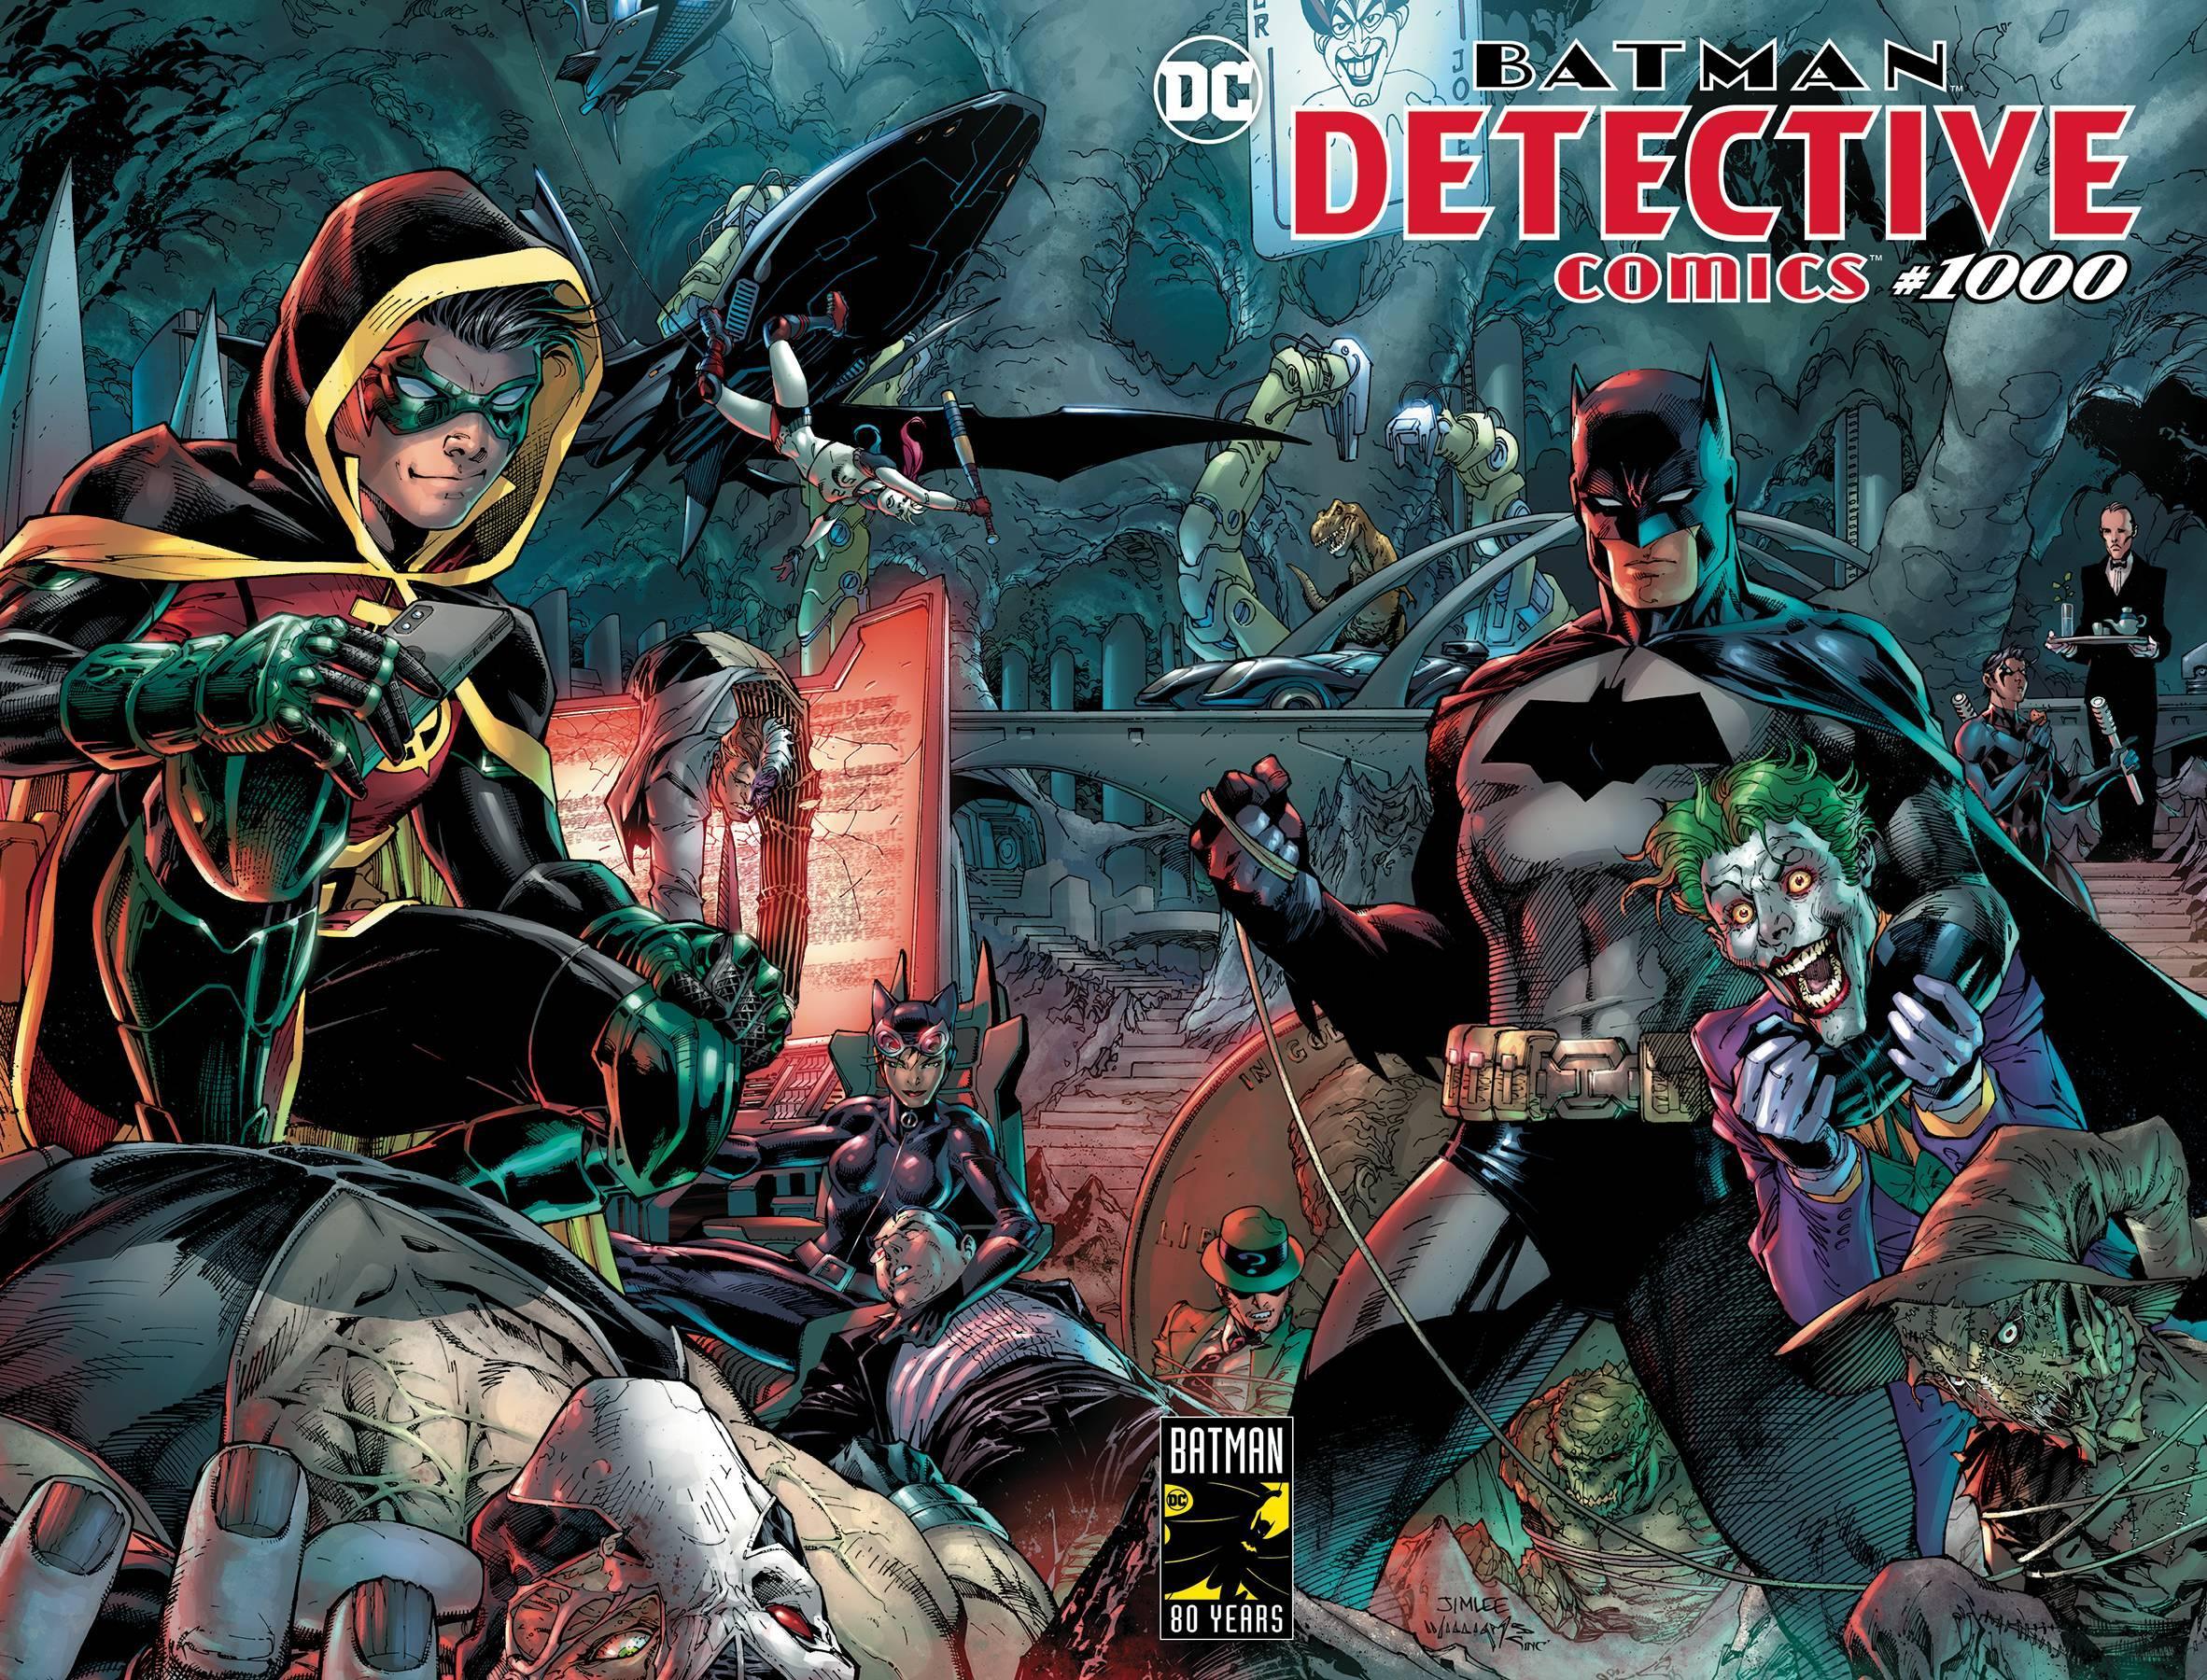 DETECTIVE COMICS VOL 2 #1000 - Kings Comics